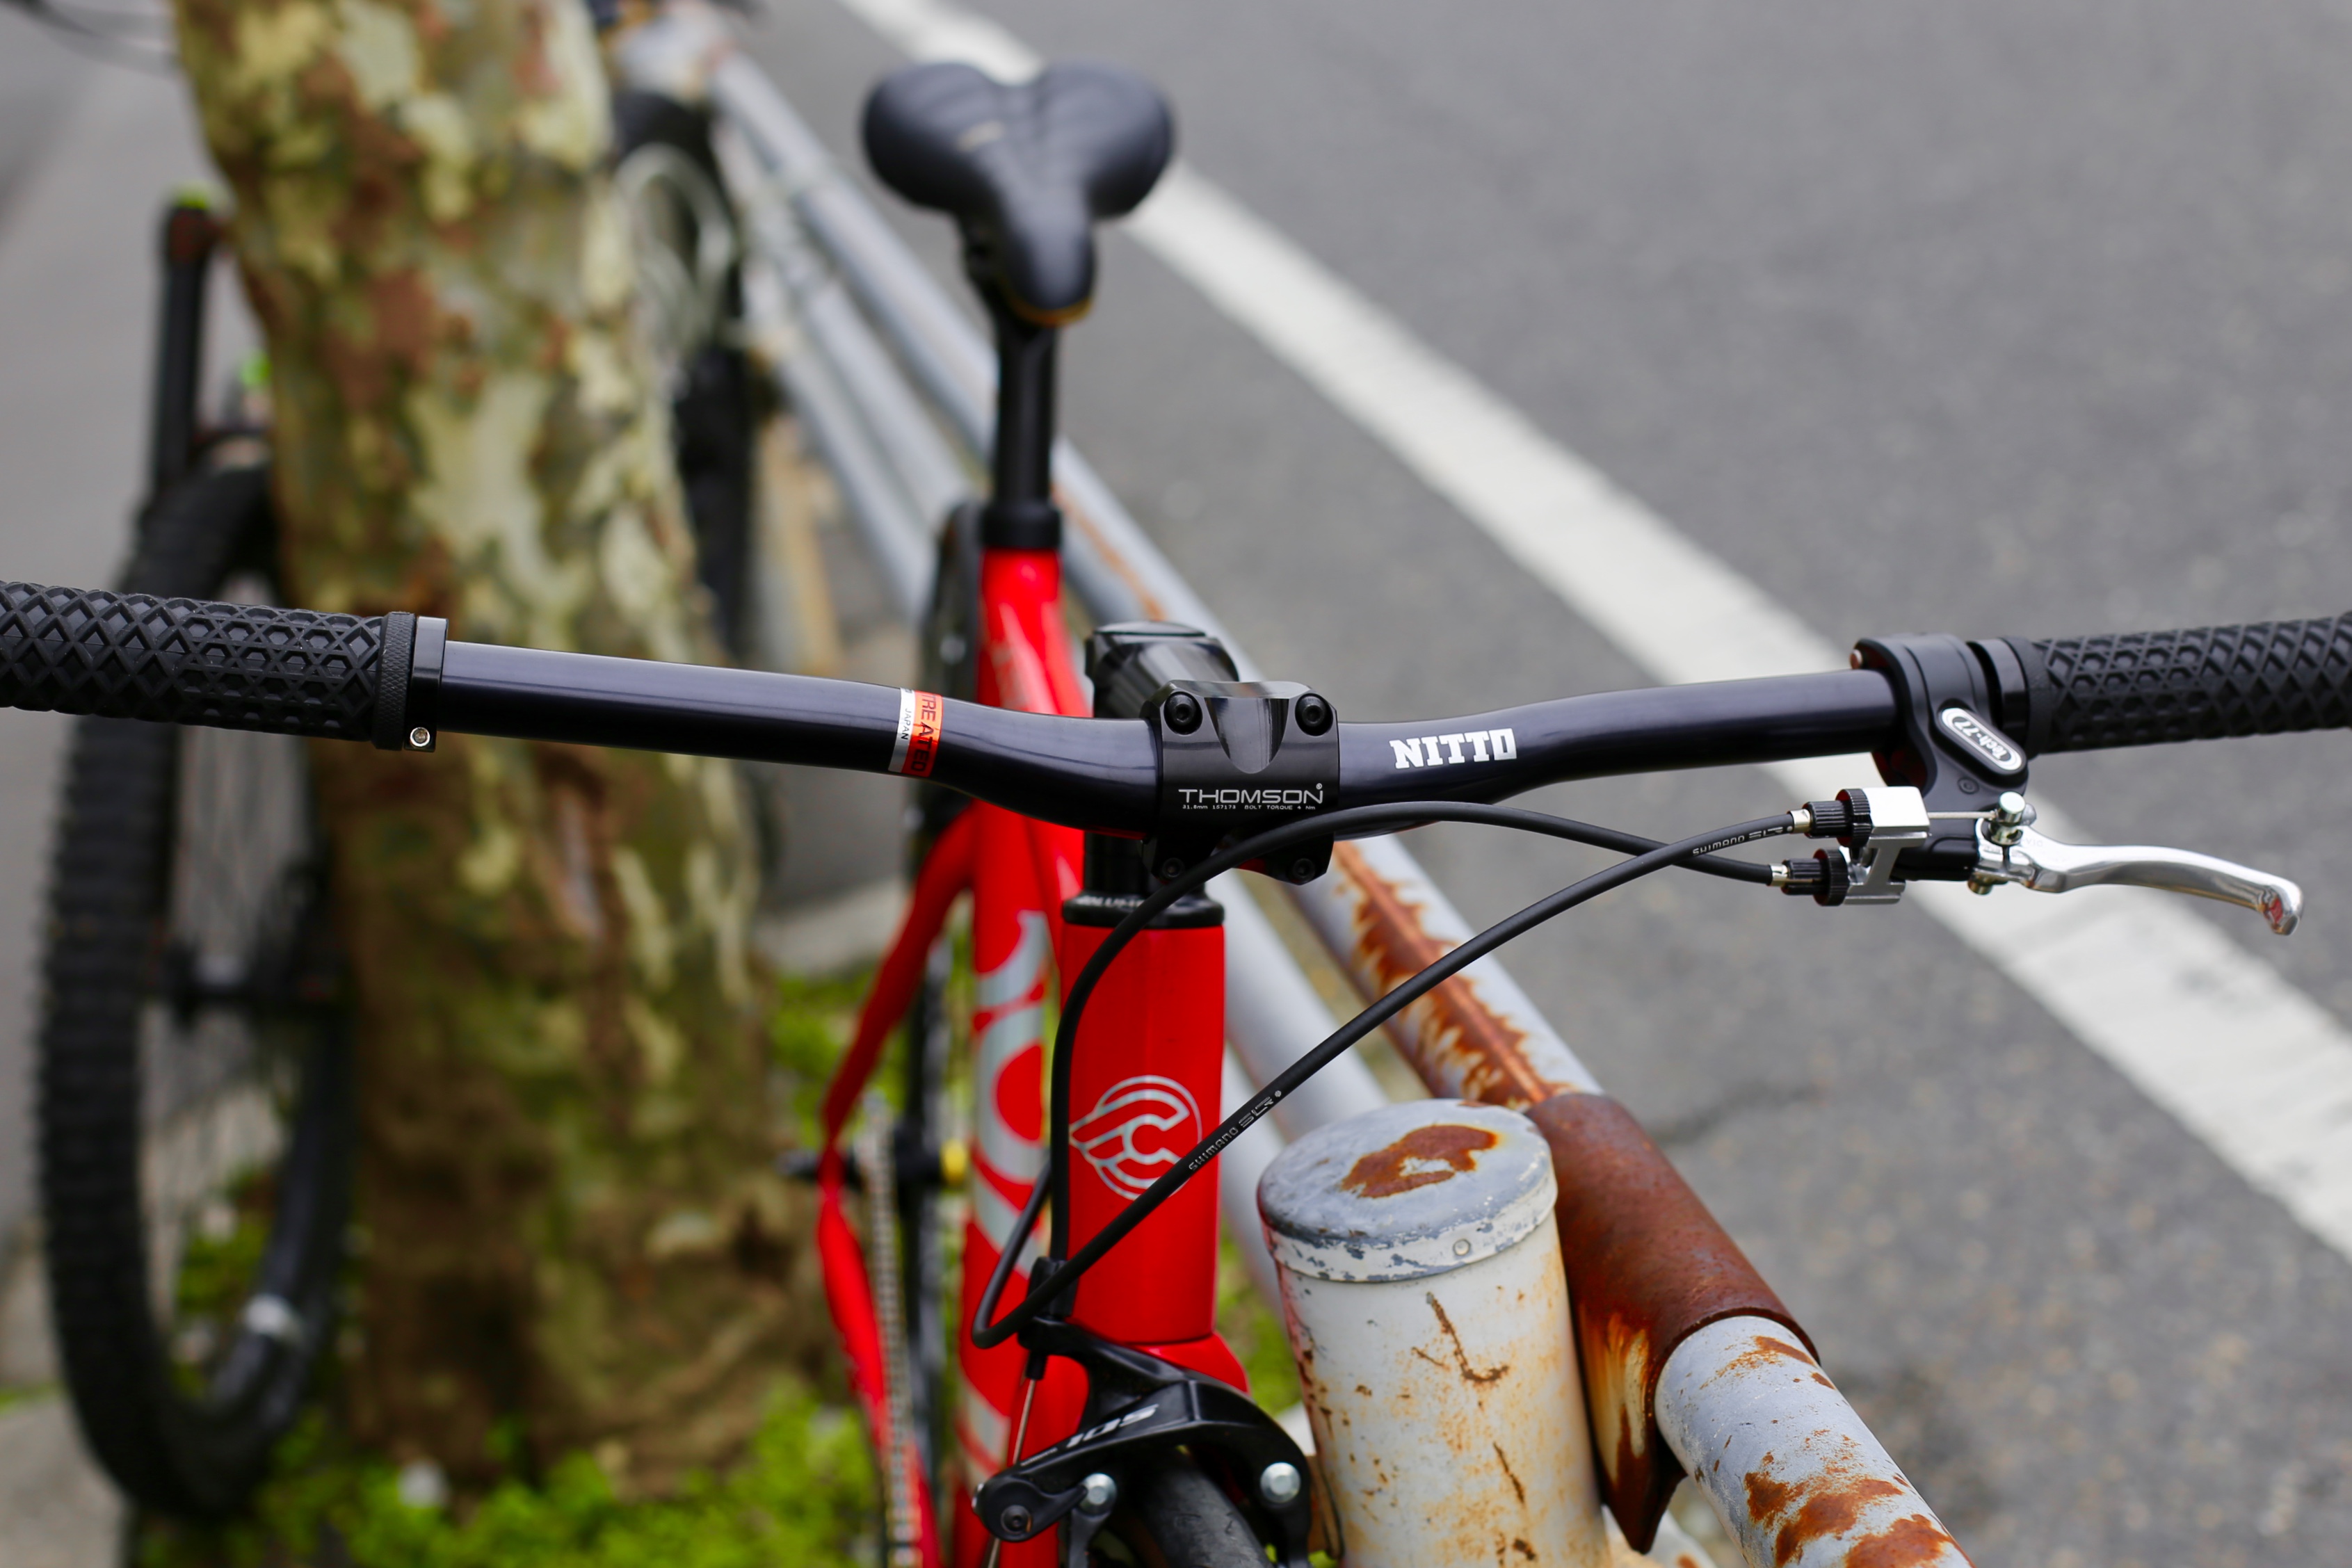 ピストのハンドルといえばNitto For Shred | 広島の自転車ショップ